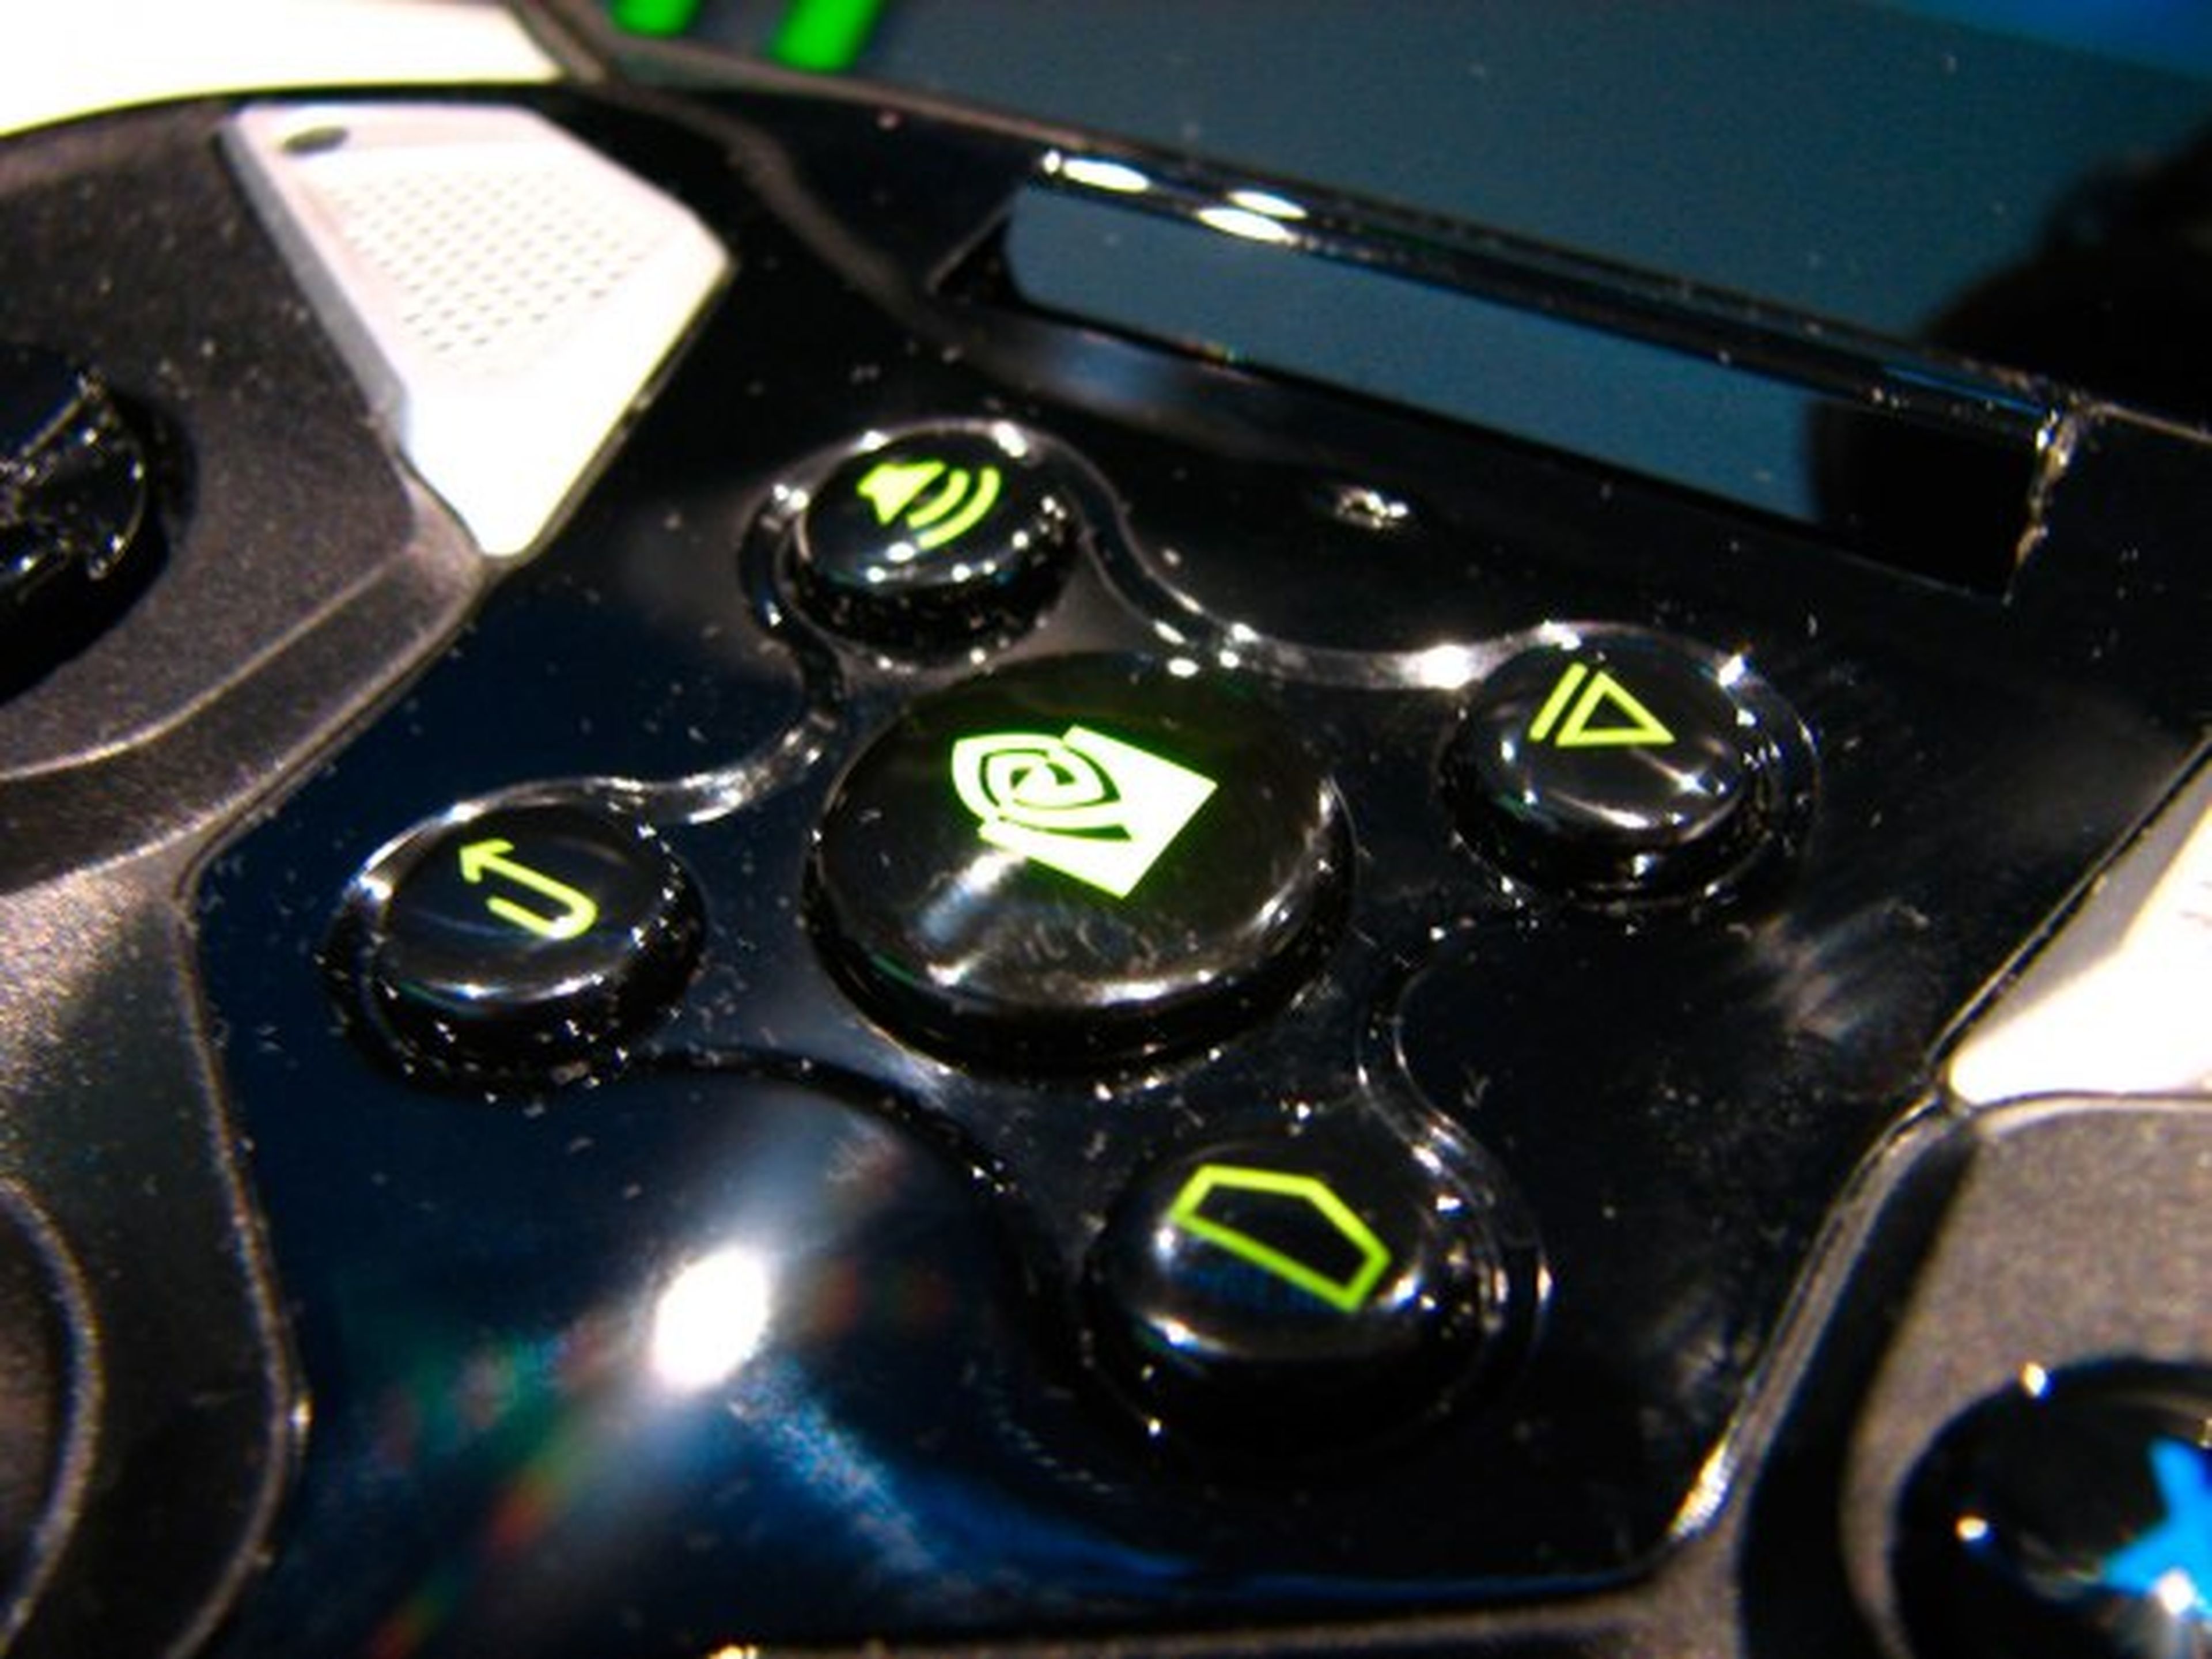 Botones de control de Nvidia Shield